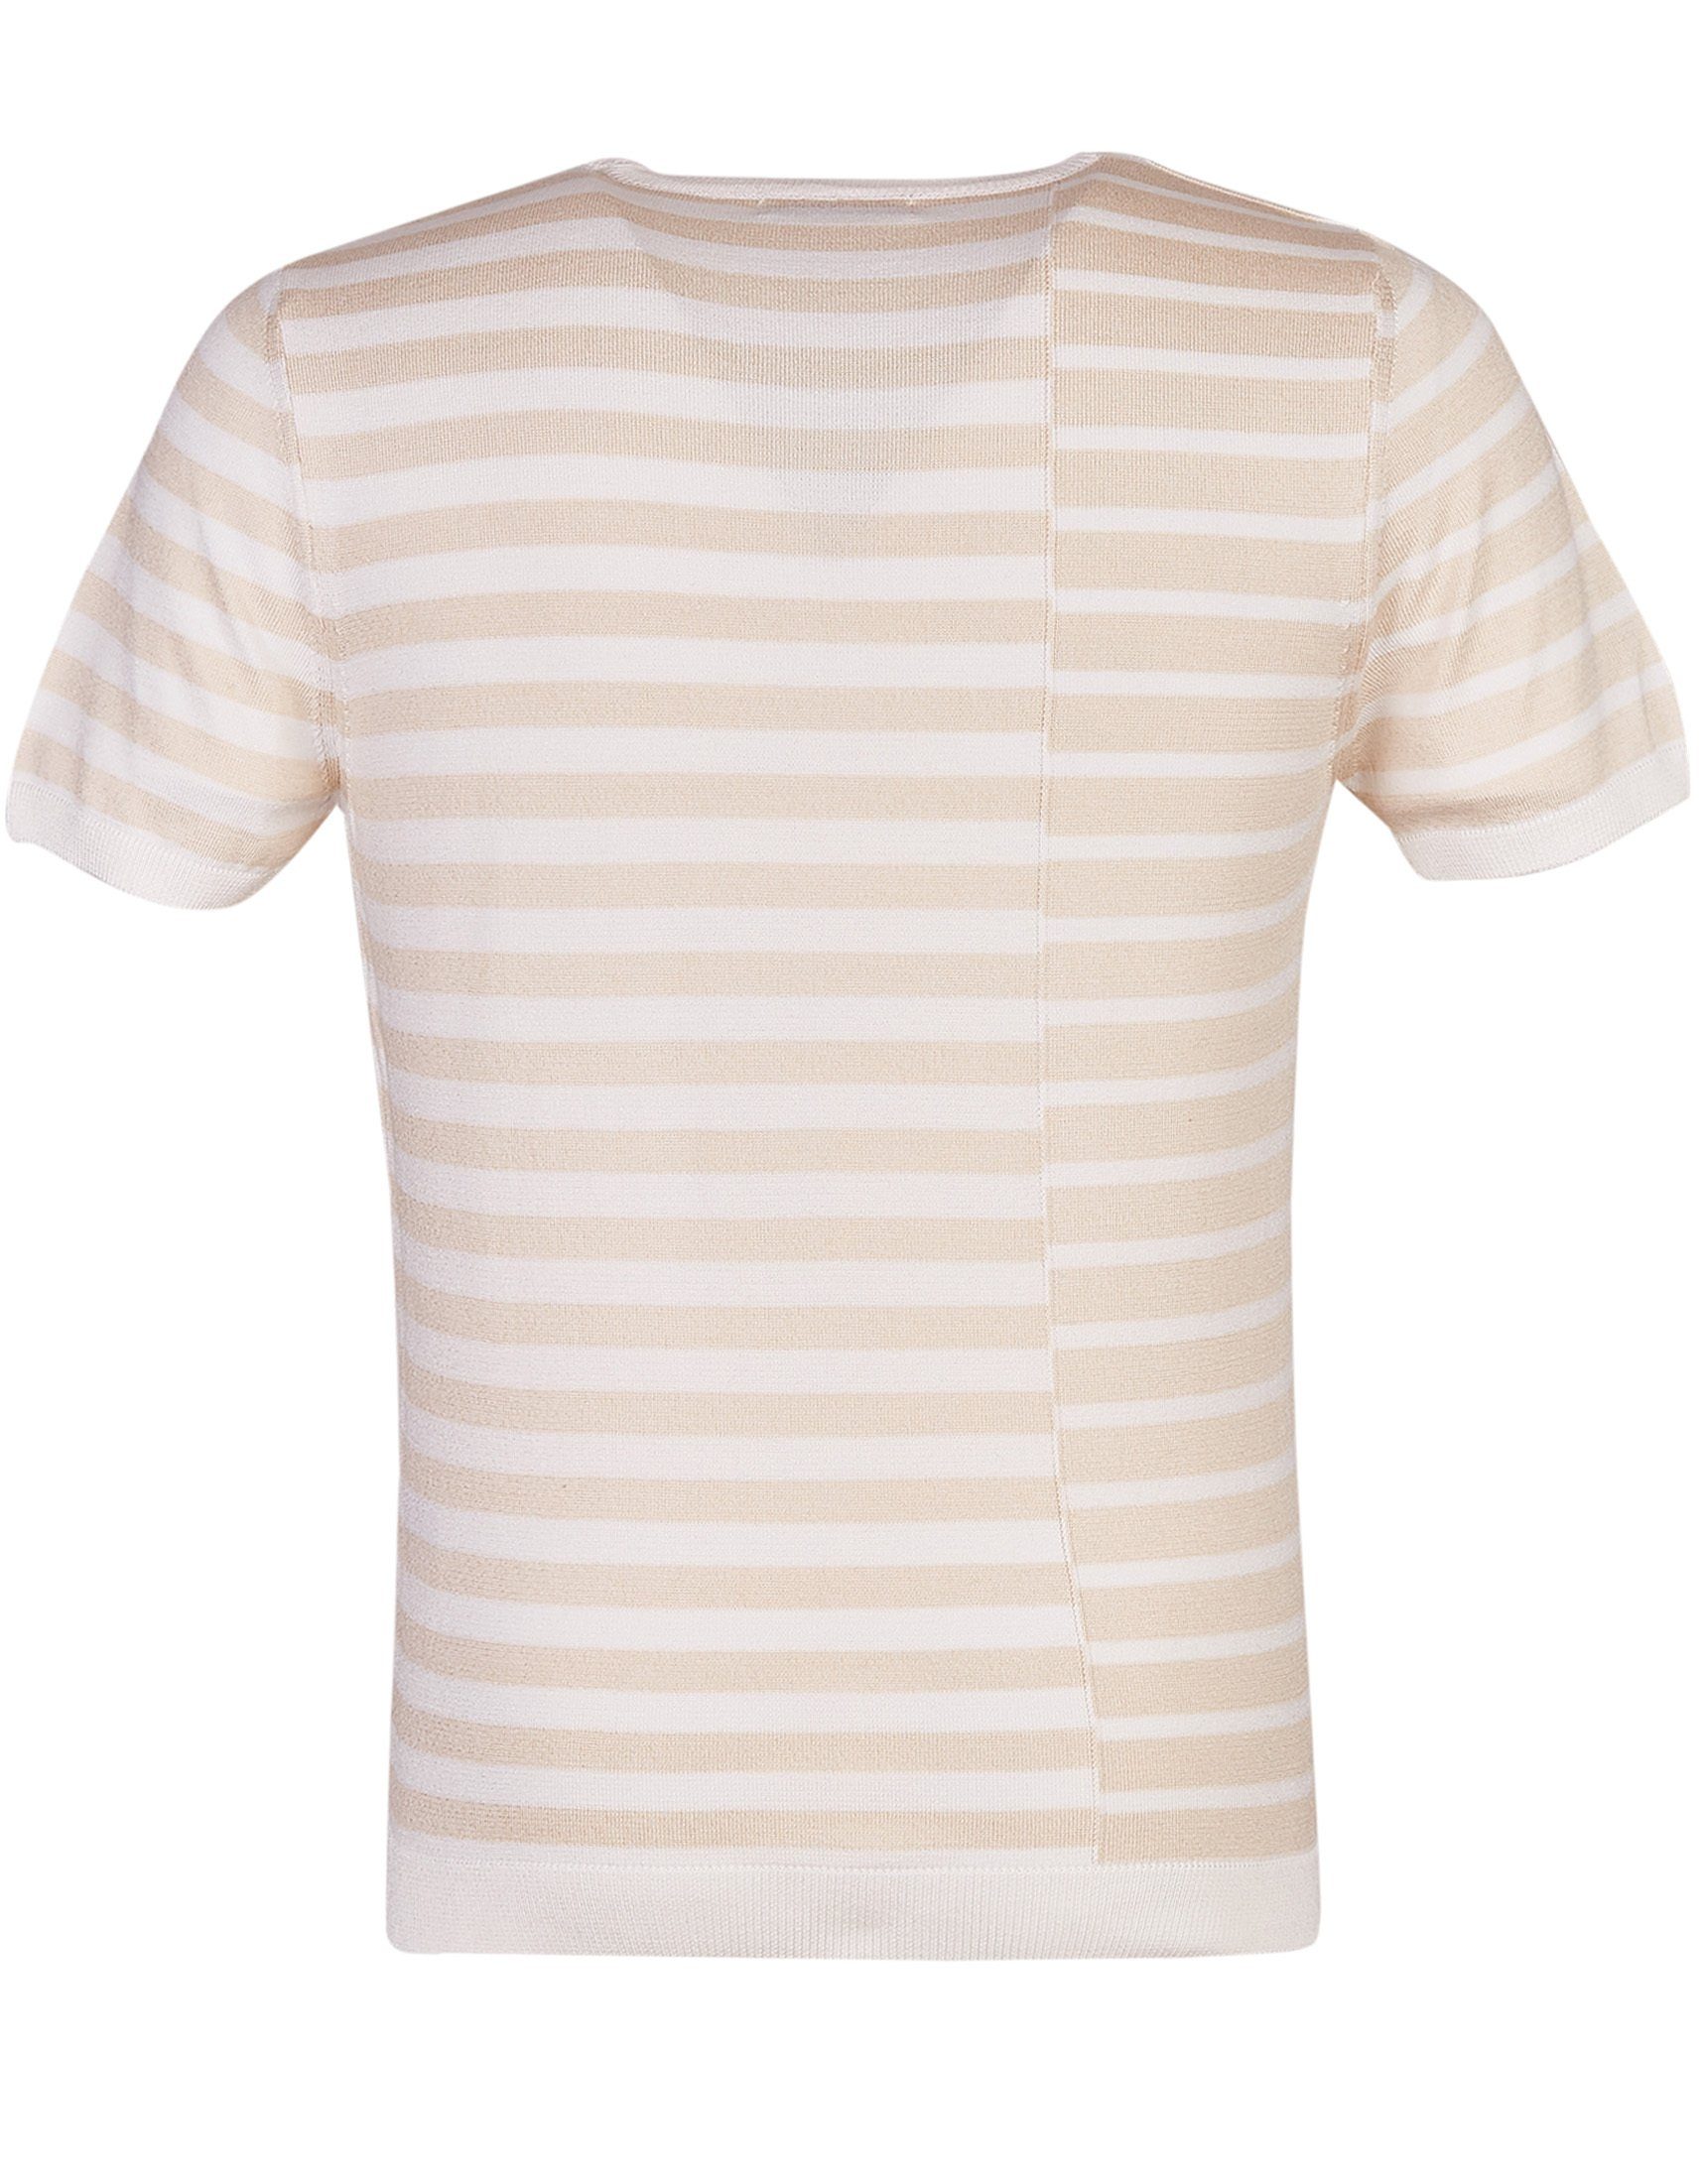 T-Shirt Leif Nelson ecru-beige Rundhals LN-7660 Feinstrick